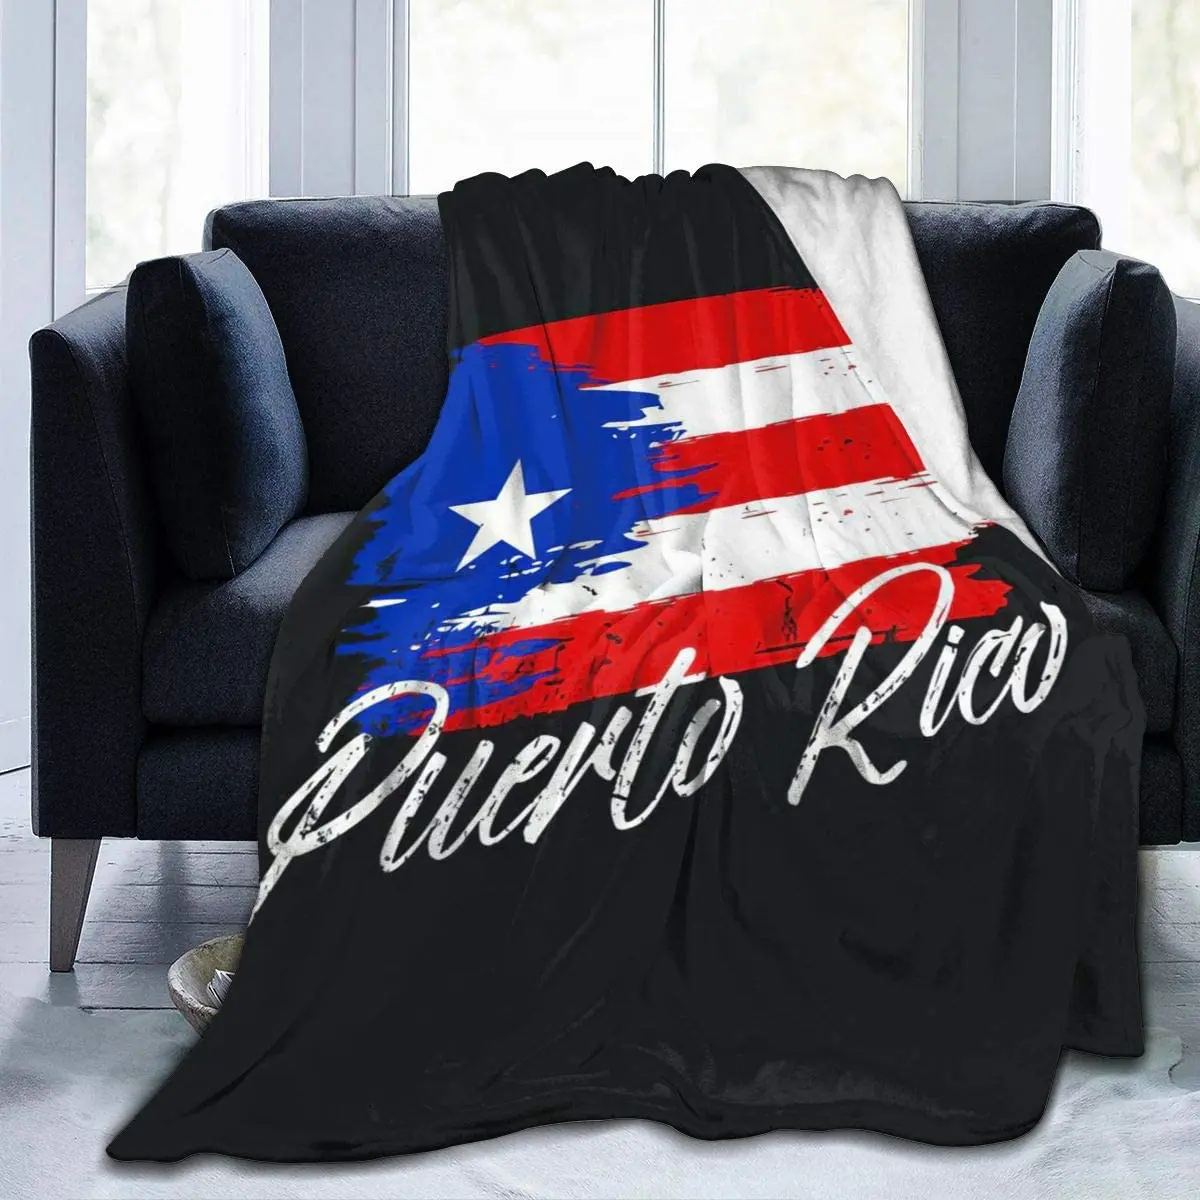 

Puerto Rico Puerto Rican Boricua Pr Flag Portorican Throw Blanket Flannel Blanket Nursery Bedroom Bedding Decor Soft Cozy